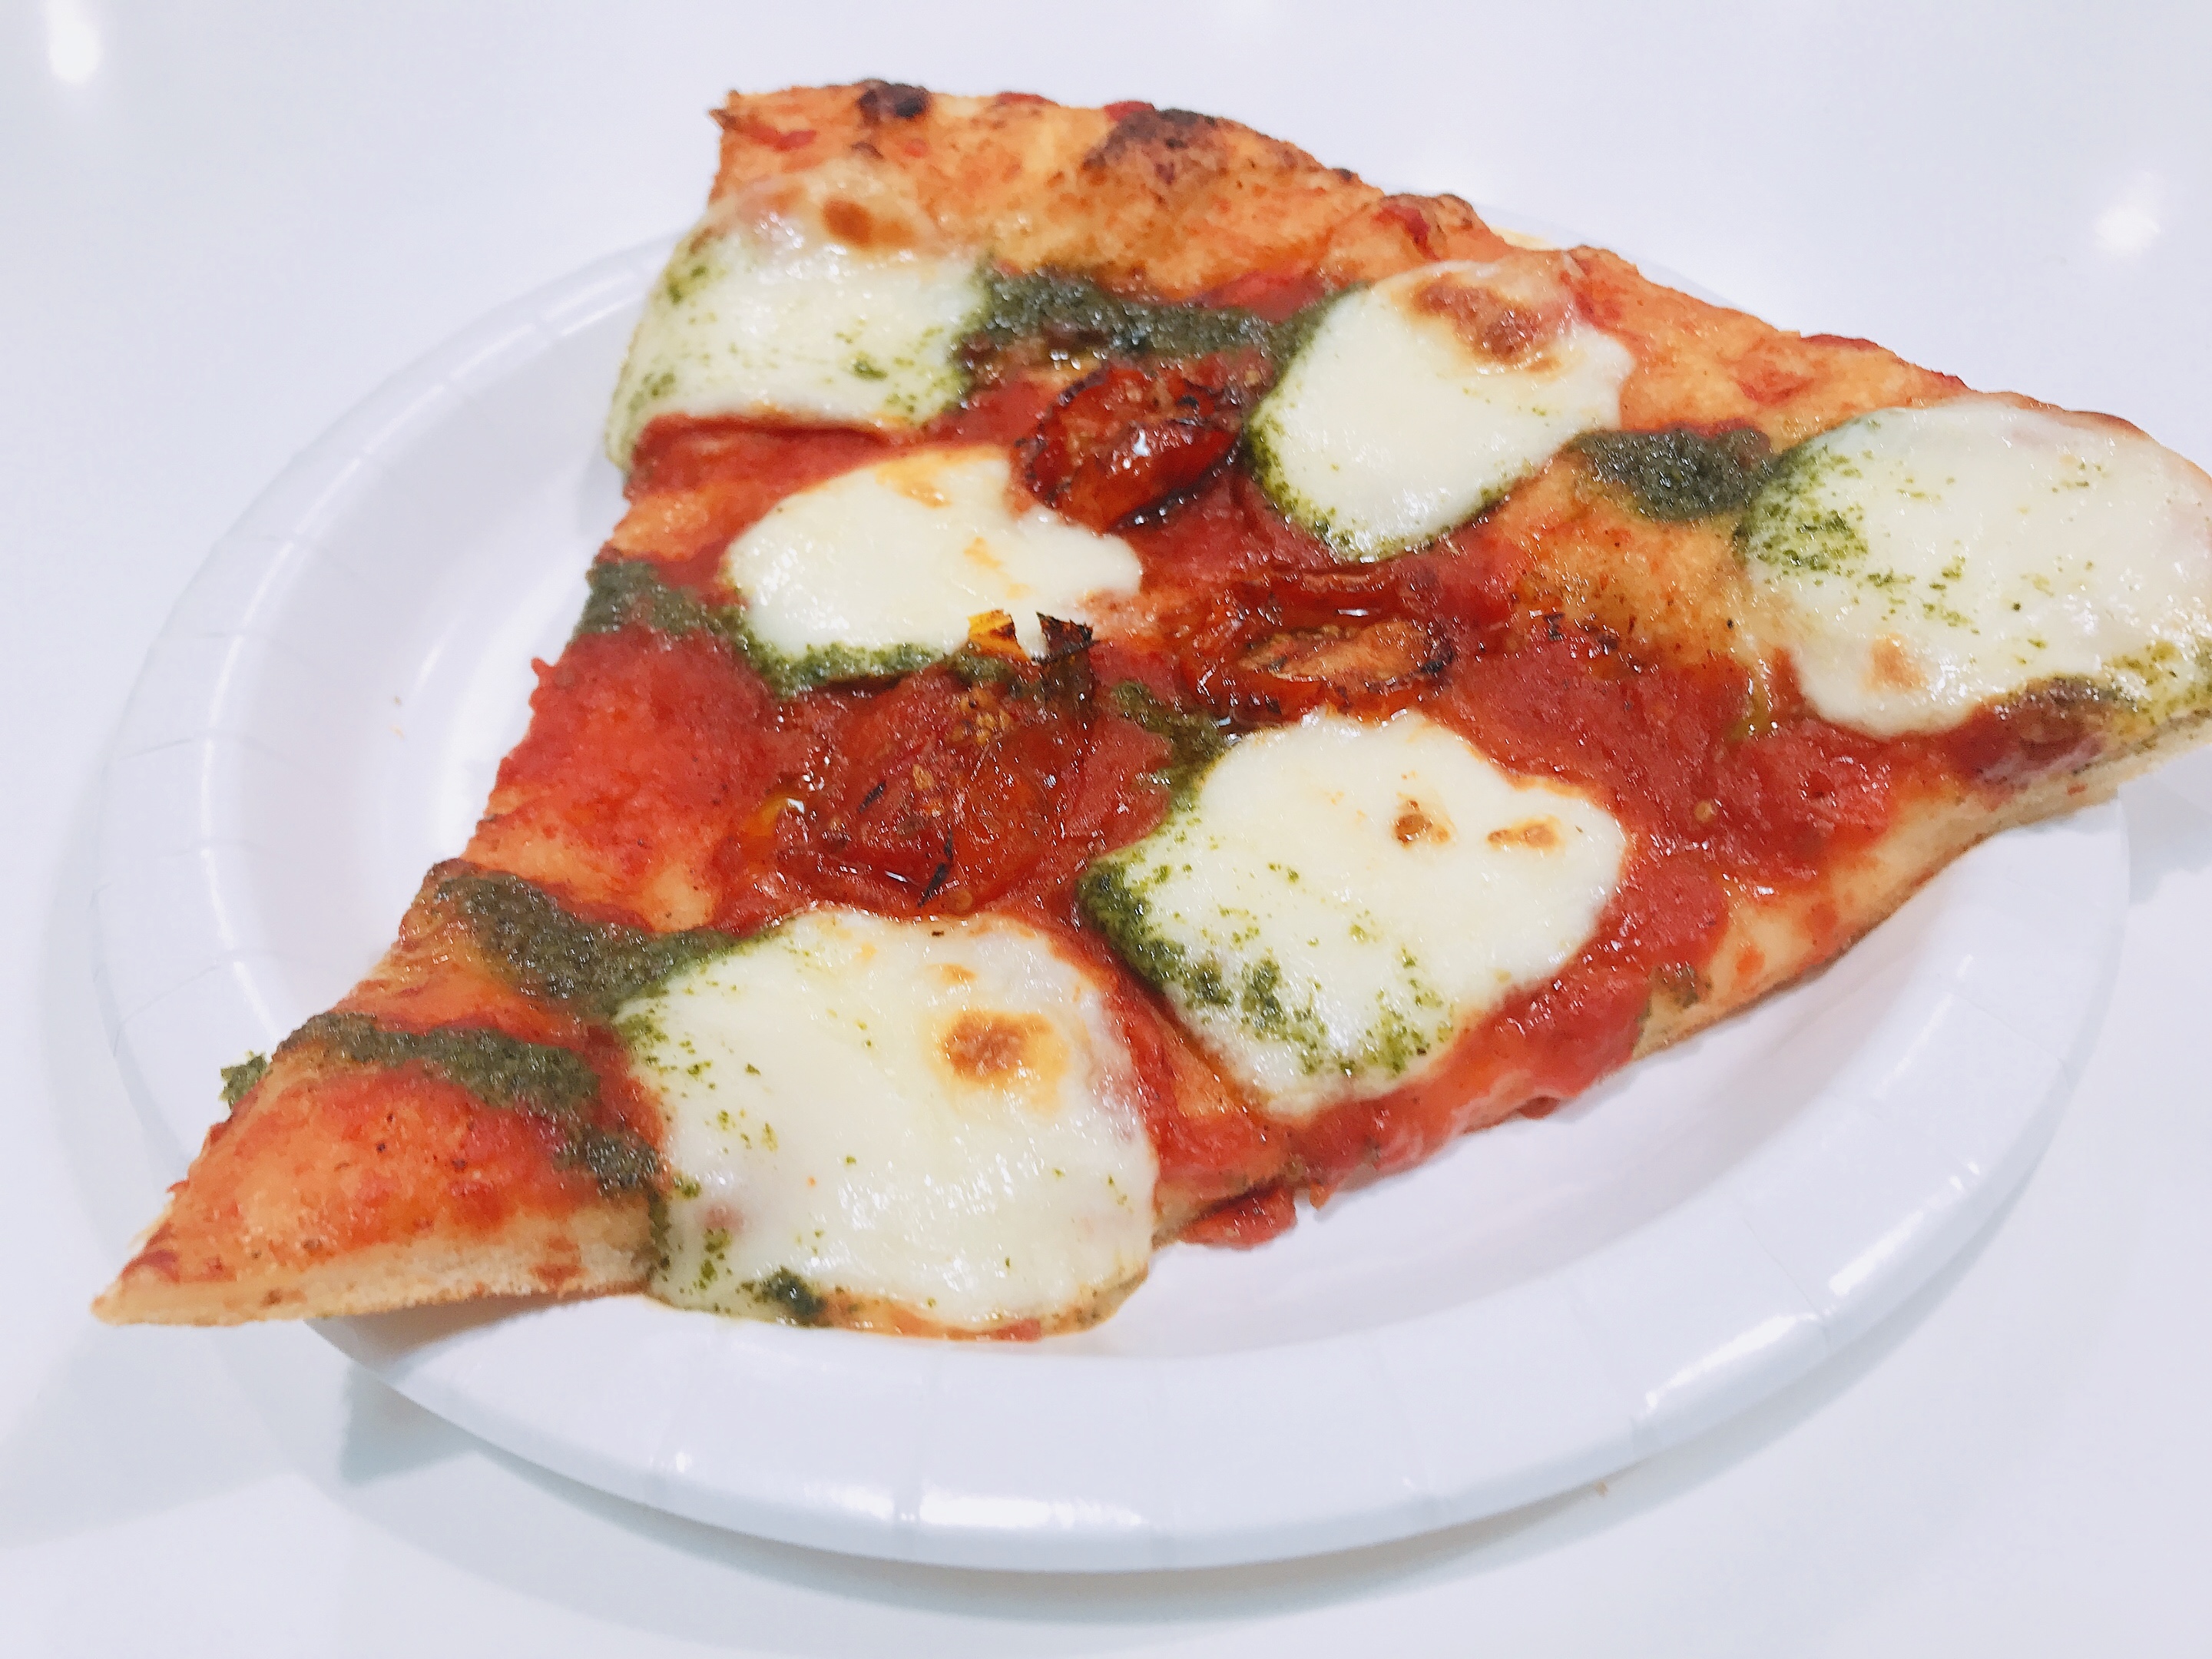 コストコフードコートでマルゲリータピザがおいしい 食べた感想と冷凍保存についても Mikoroのﾌﾞﾛｸﾞ